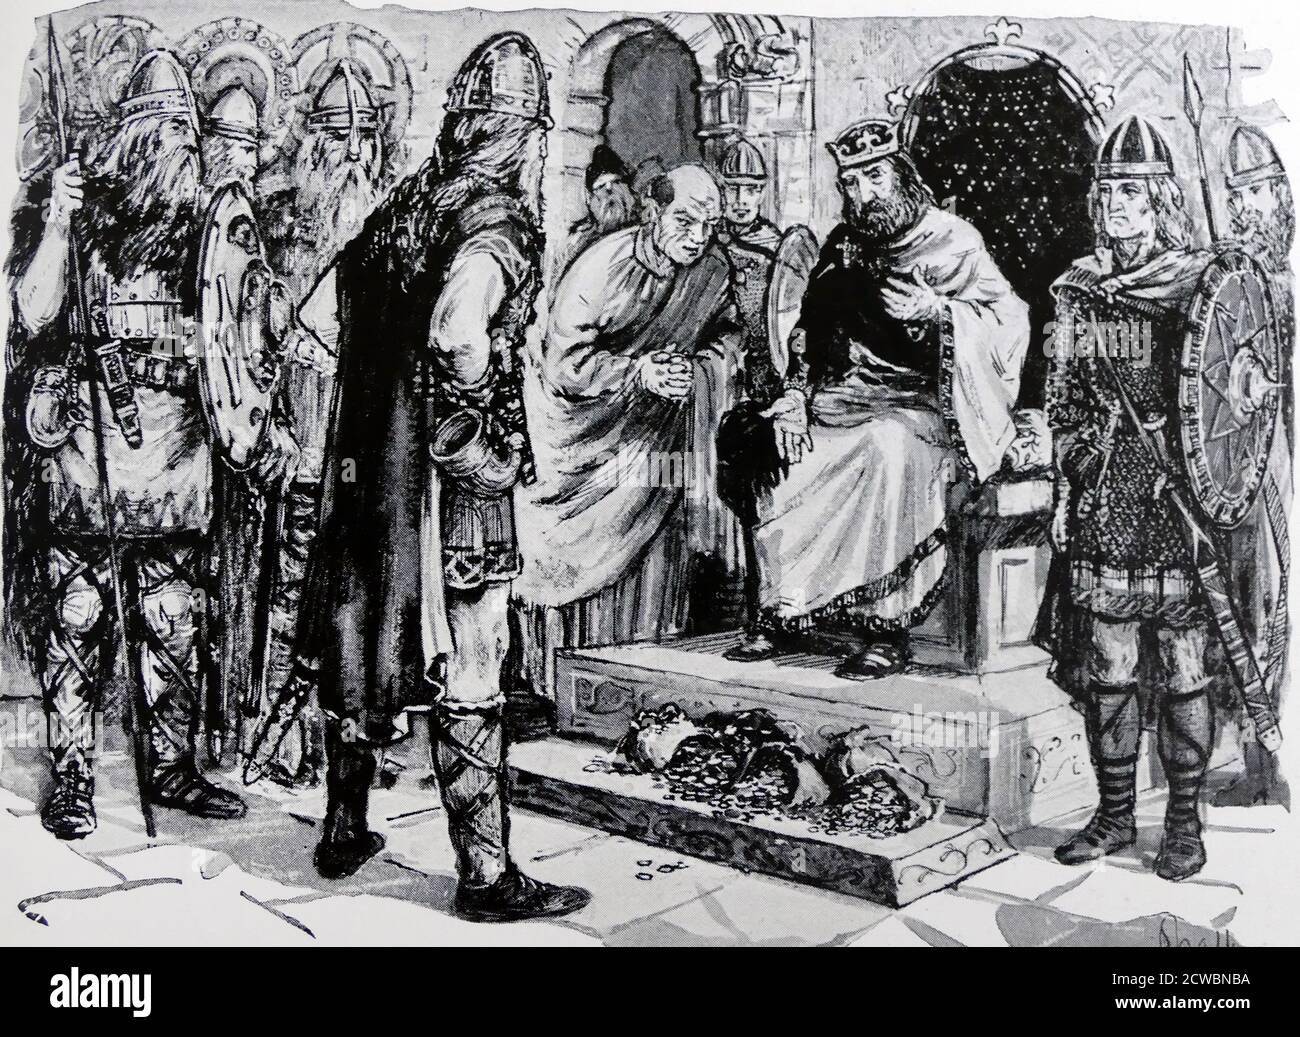 Illustration représentant le roi d'Angleterre Ethelred II payant de l'or aux Vikings. Ethelred II (c. 966 - 1016), connu sous le nom d'indié, fut roi des Anglais de 978 à 1013 et de 1014 jusqu'à sa mort. Banque D'Images